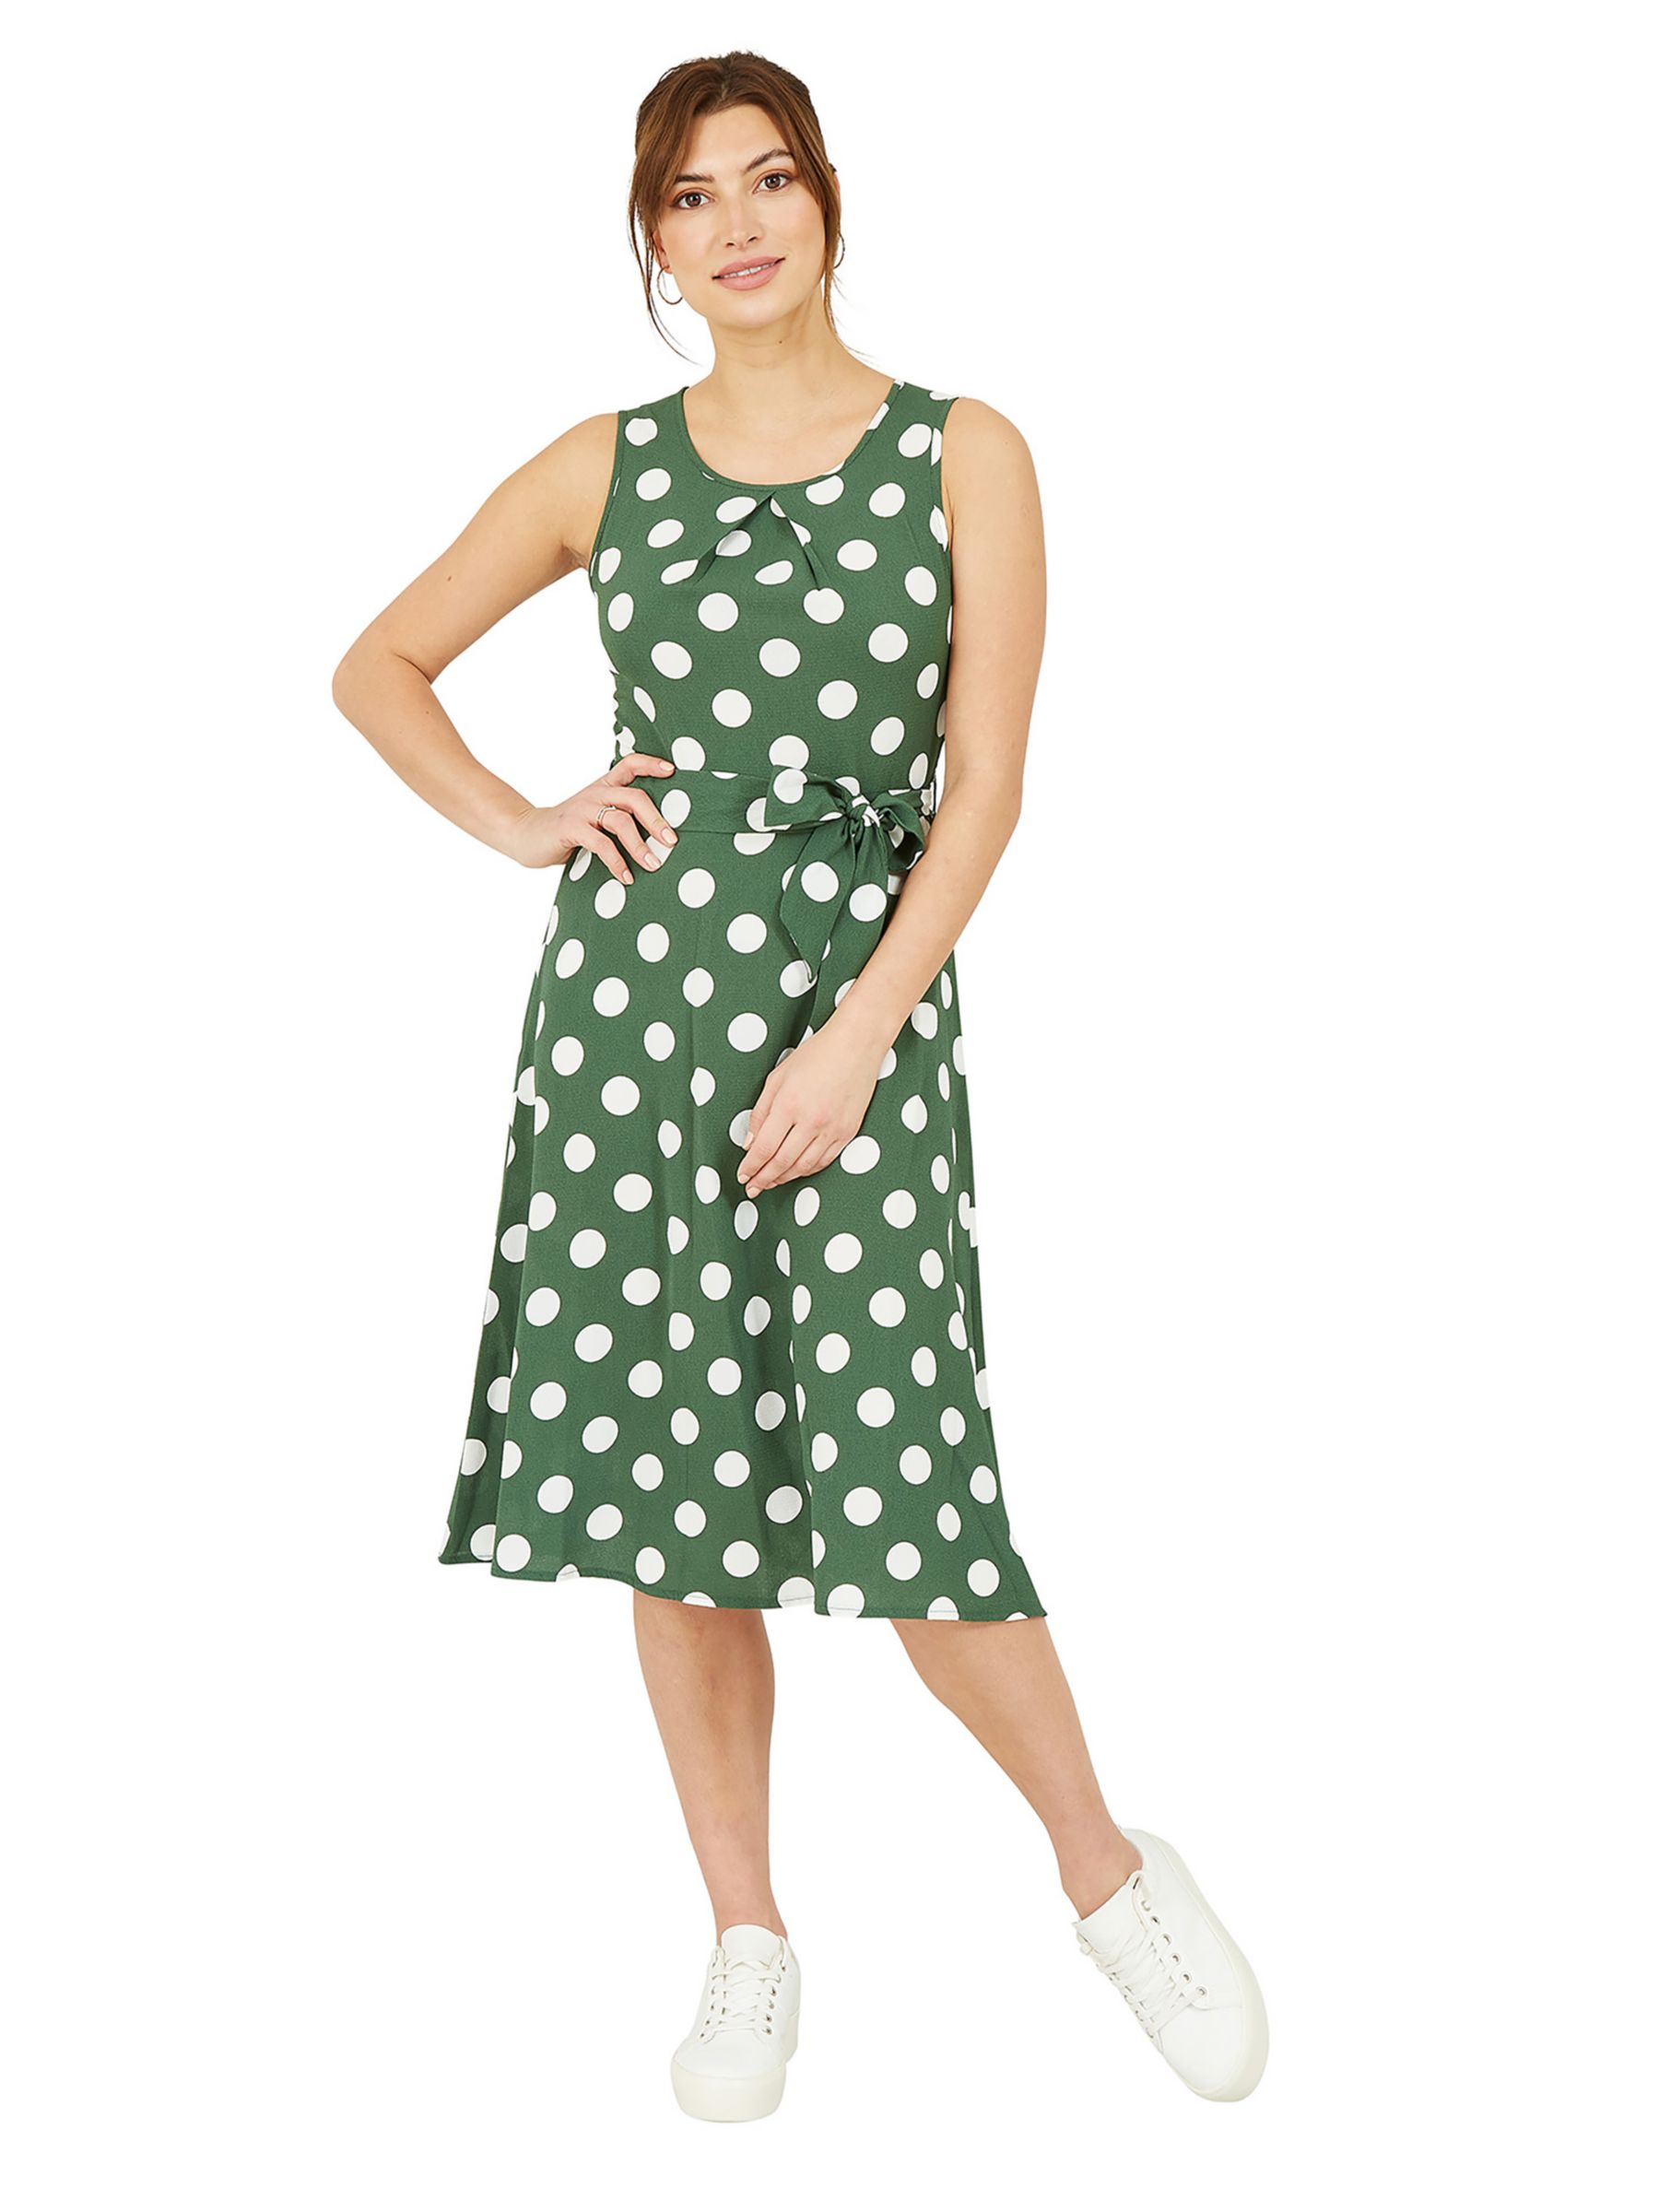 Buy Mela London Polka Dot Sleeveless Skater Midi Dress, Dark Green/Multi Online at johnlewis.com